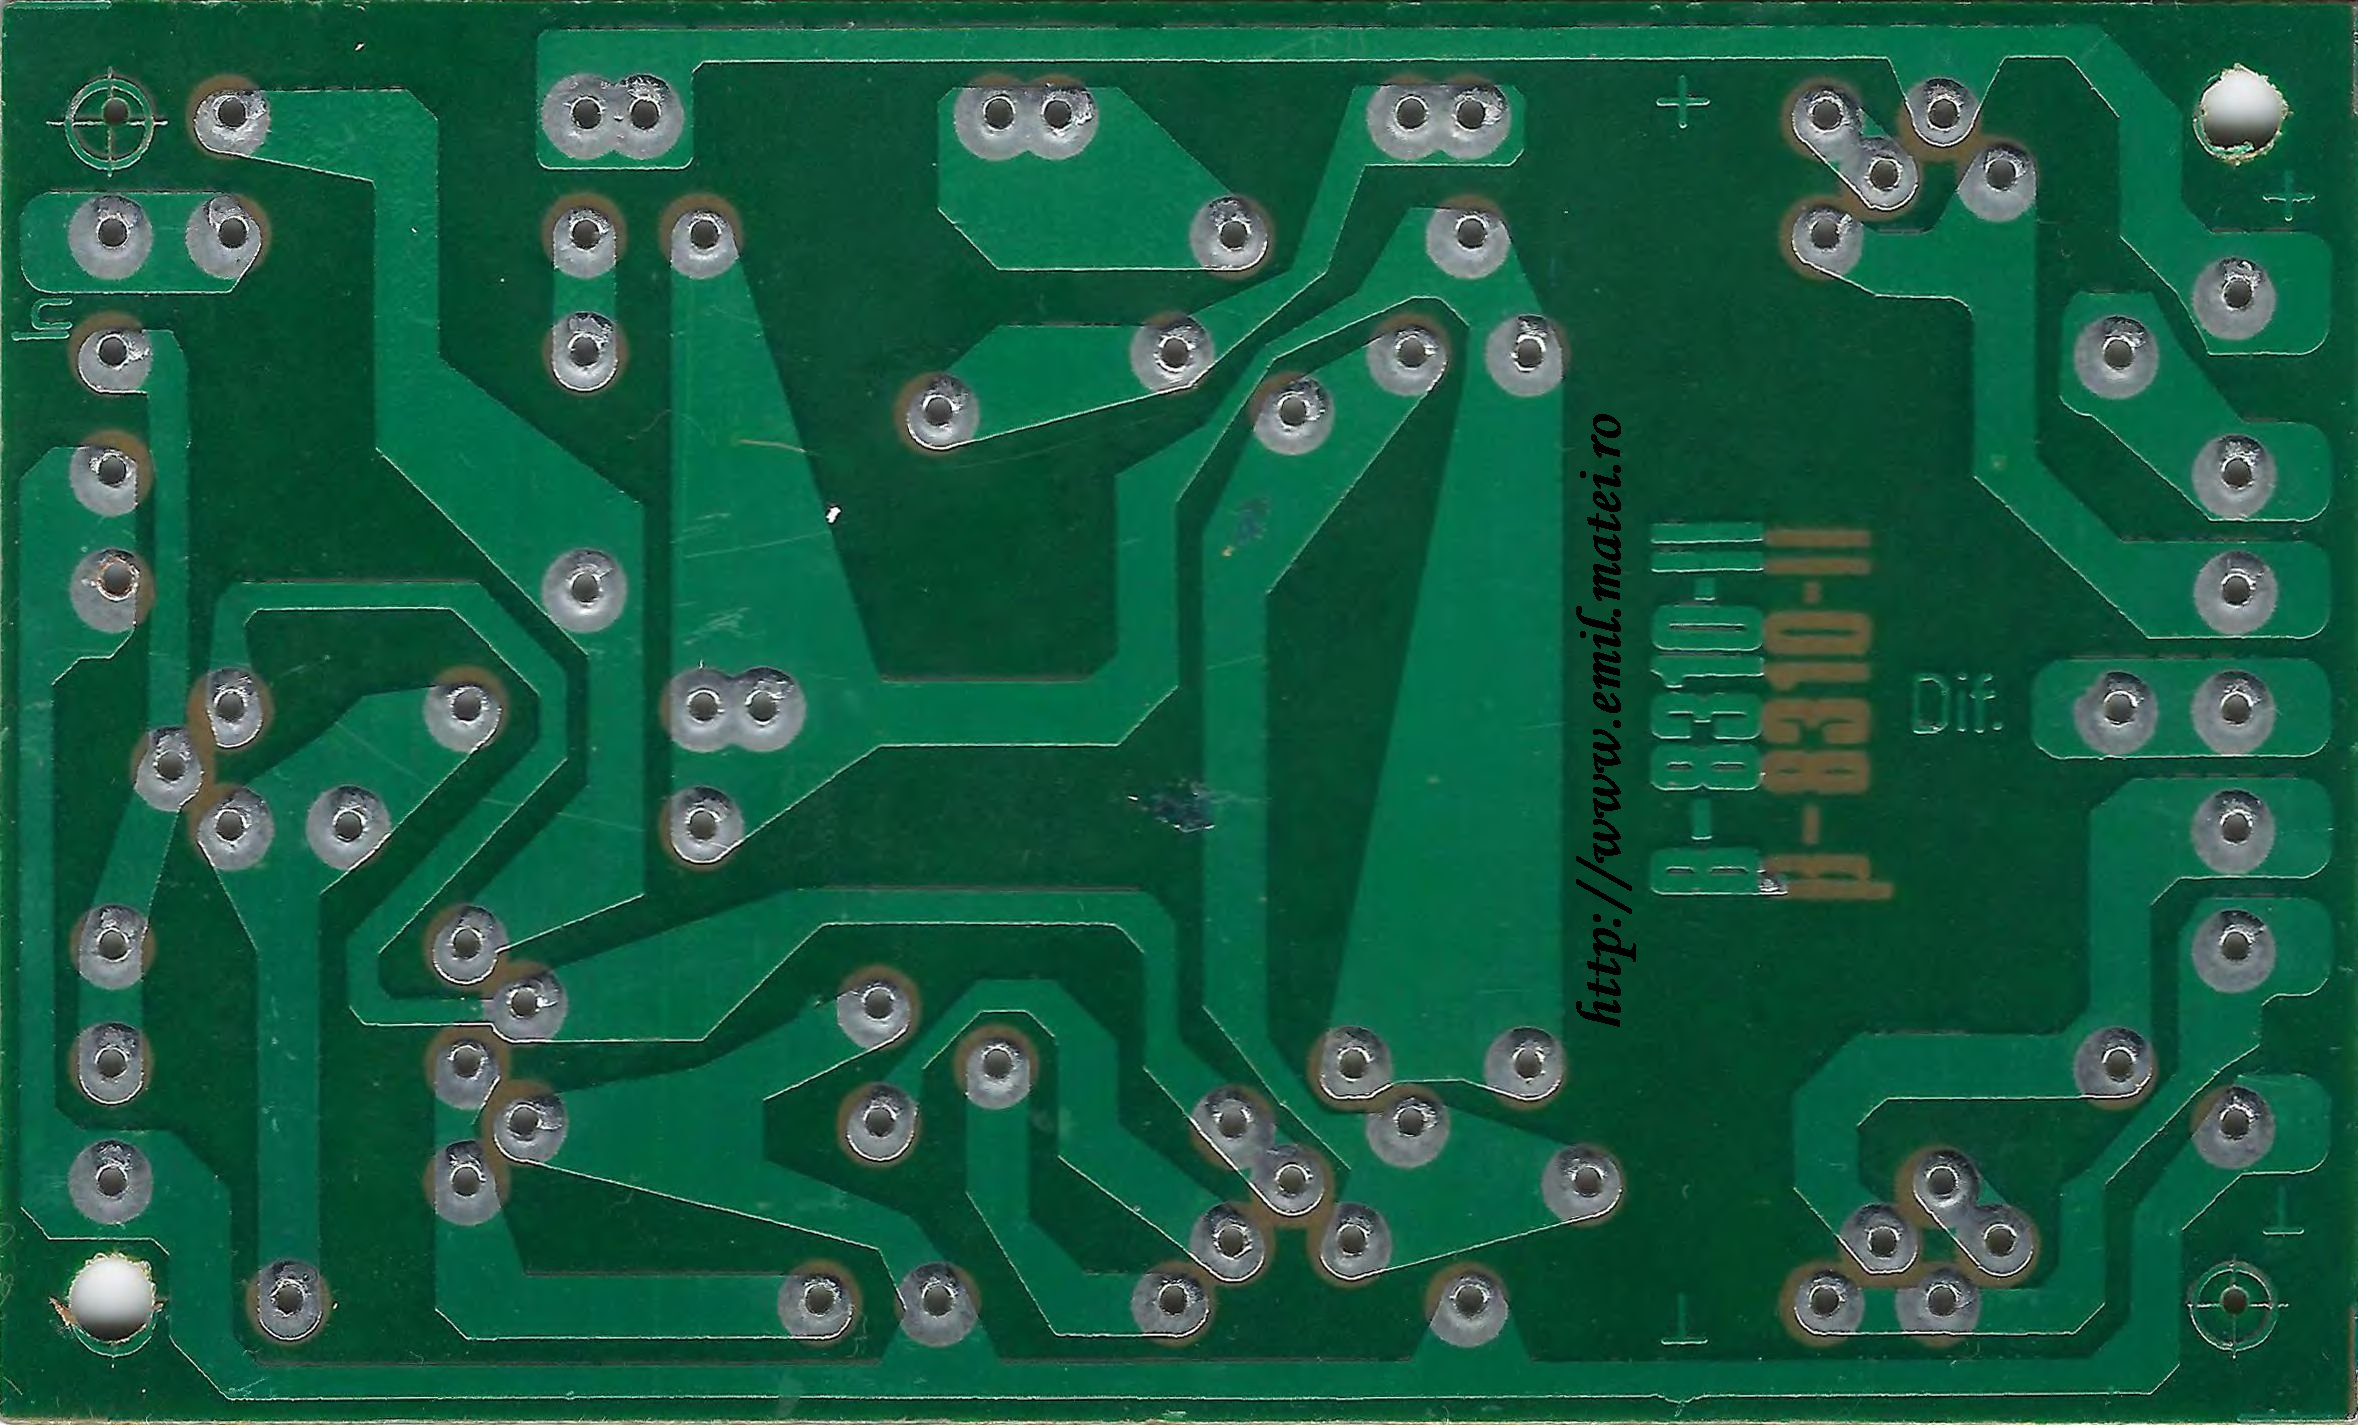 Kit 8310 IPRS Baneasa - Amplificator 15W